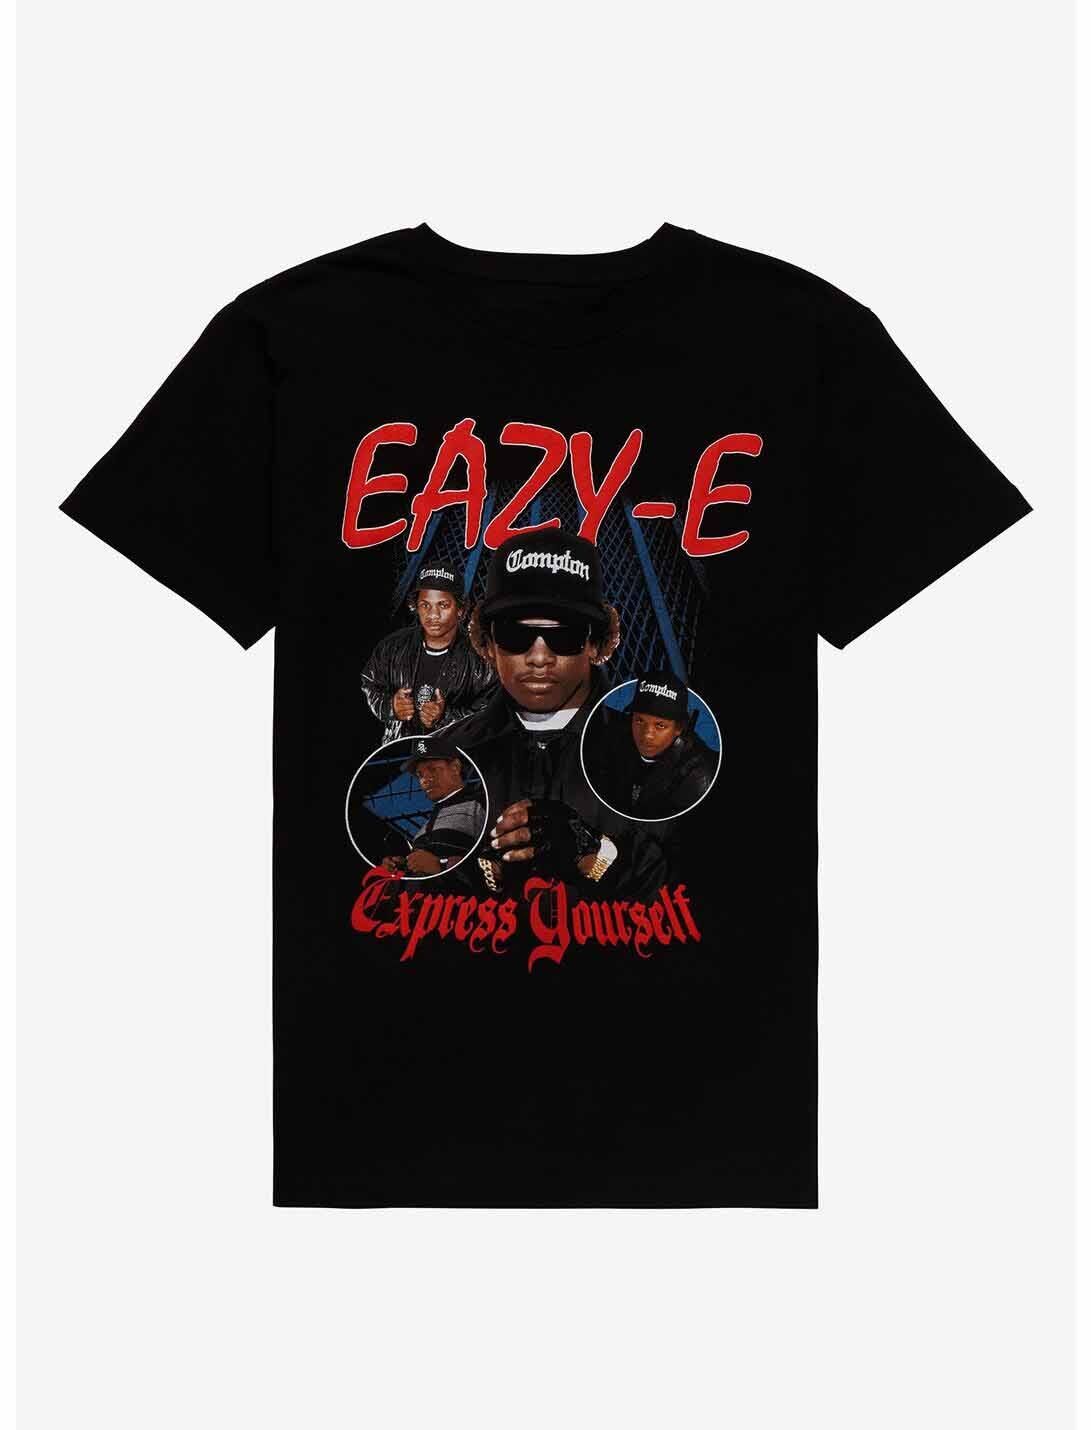 Retro Eazy-E Express Yourself Shirt Short Sleeve Black Unisex S-5XL RE302